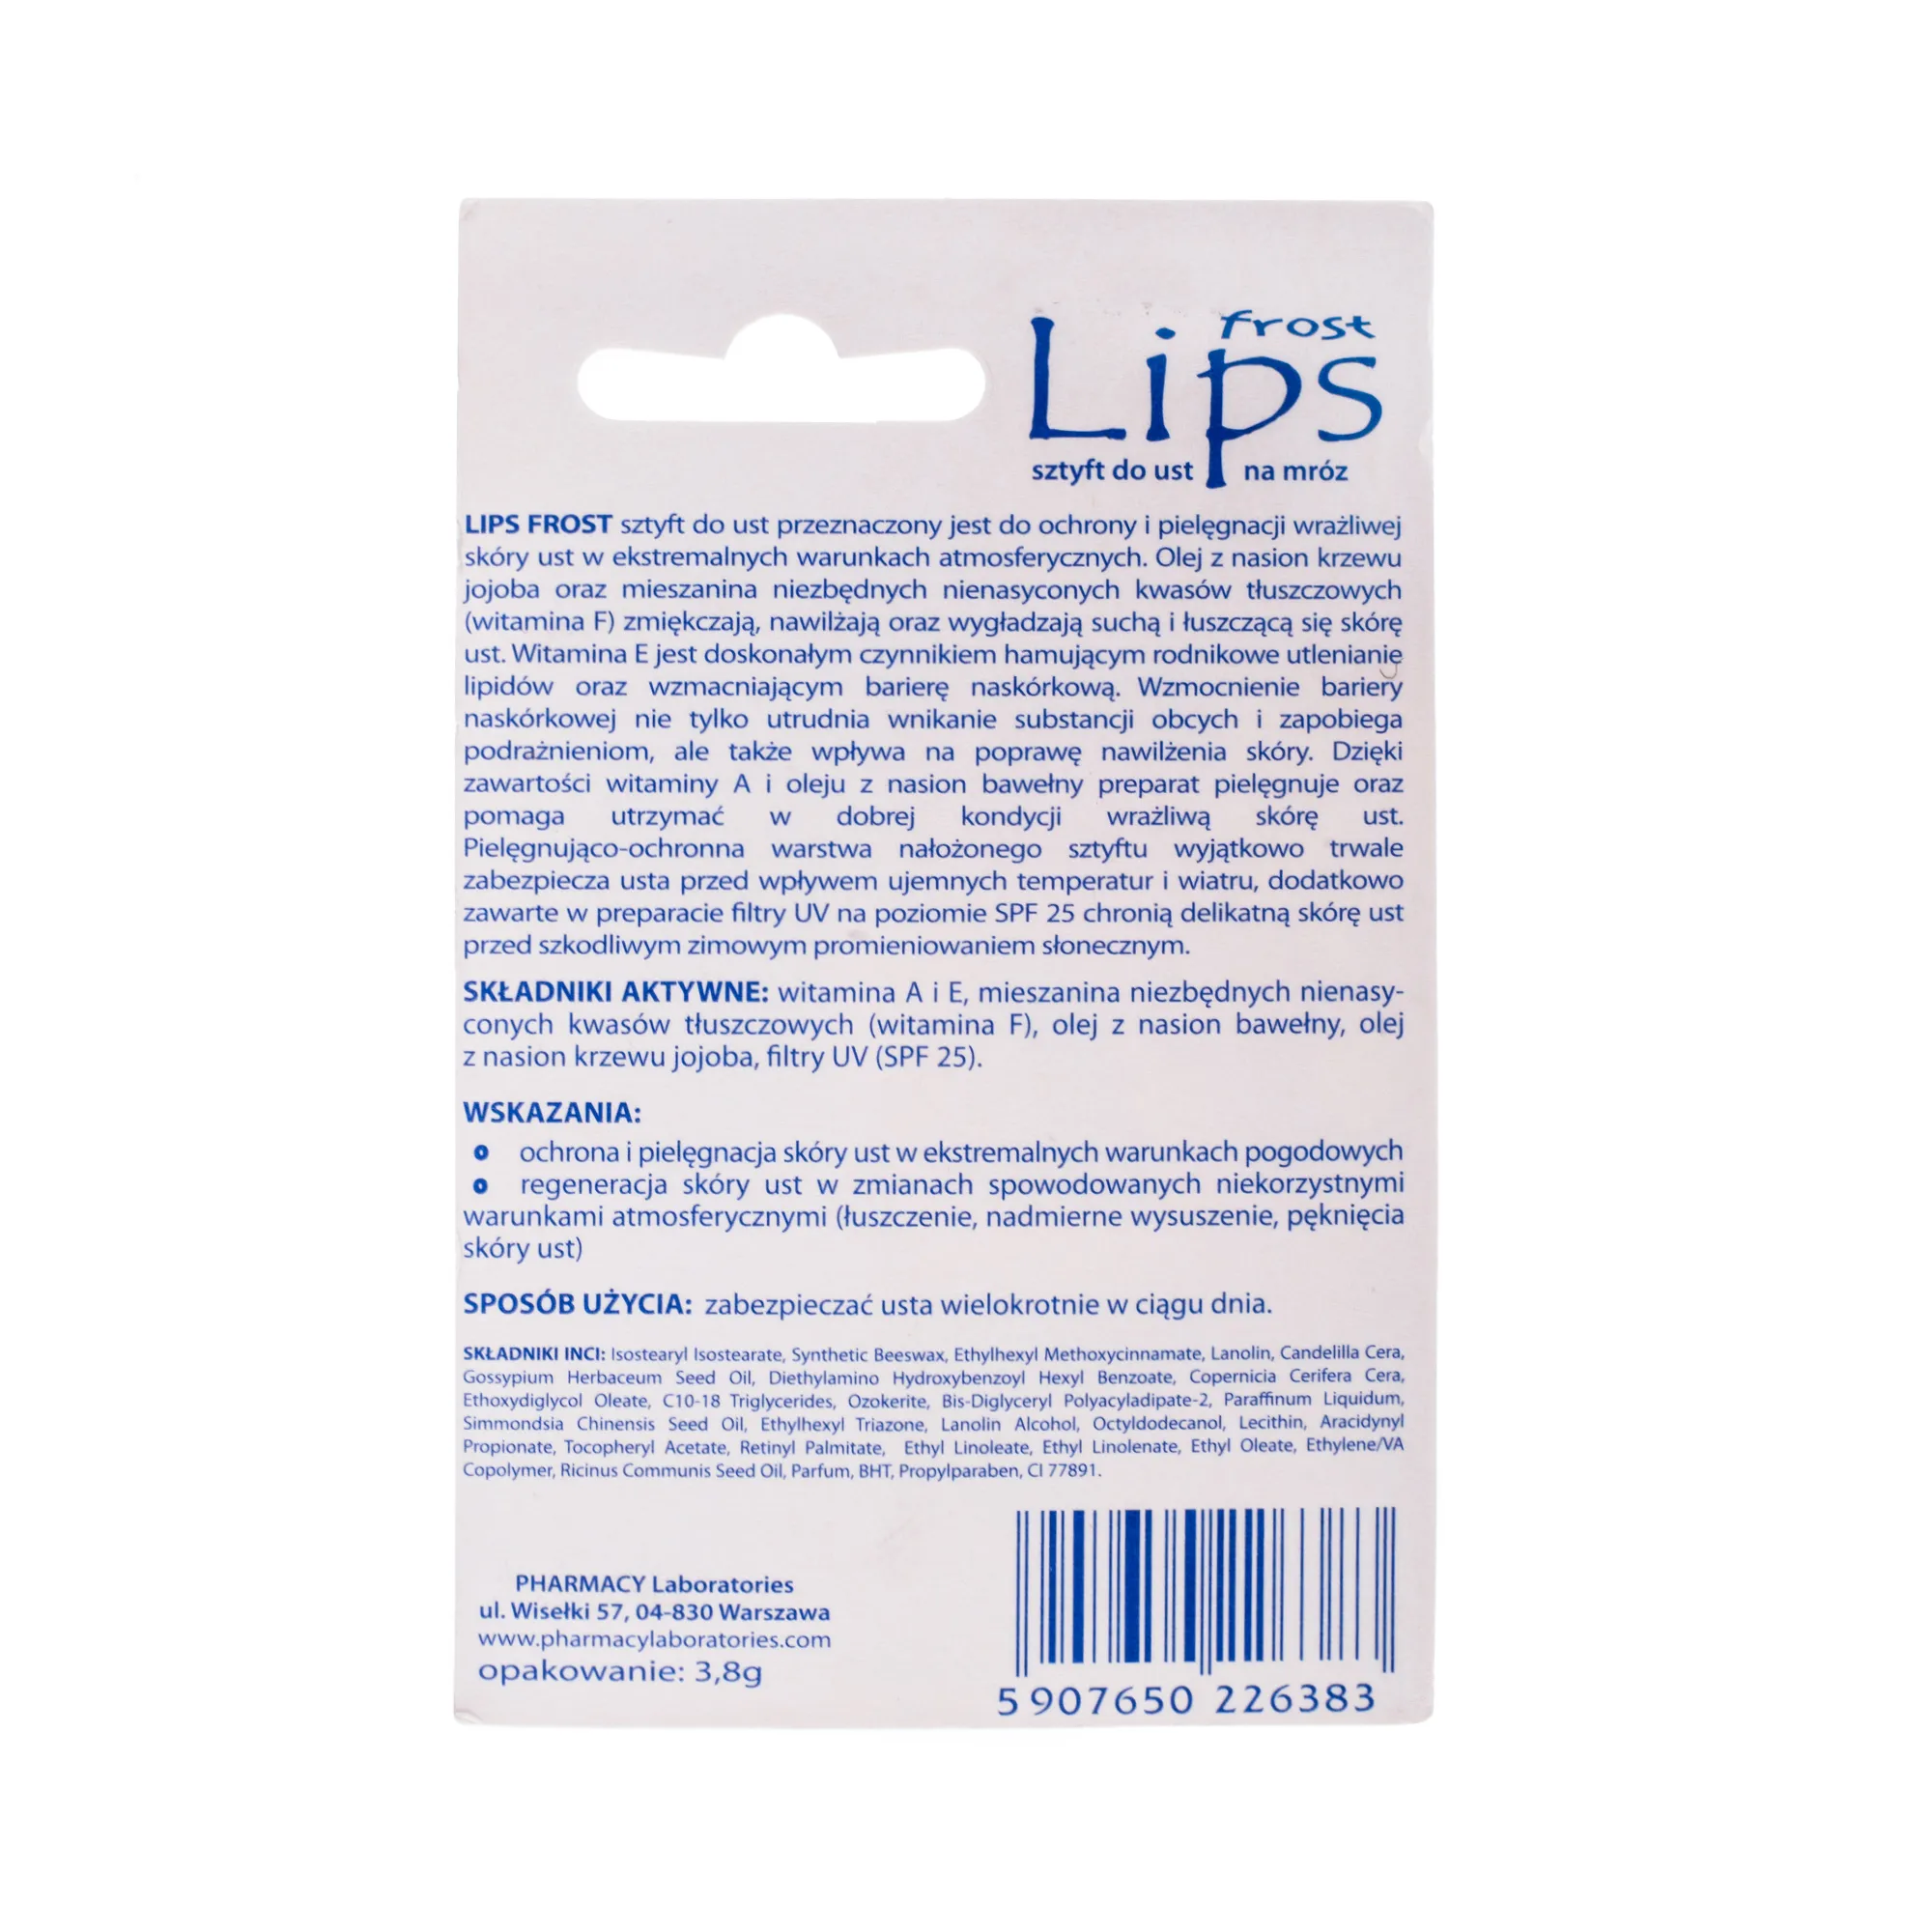 Lips Frost, sztyft na mróz do ochrony wrażliwej skóry ust, 3,8 g 